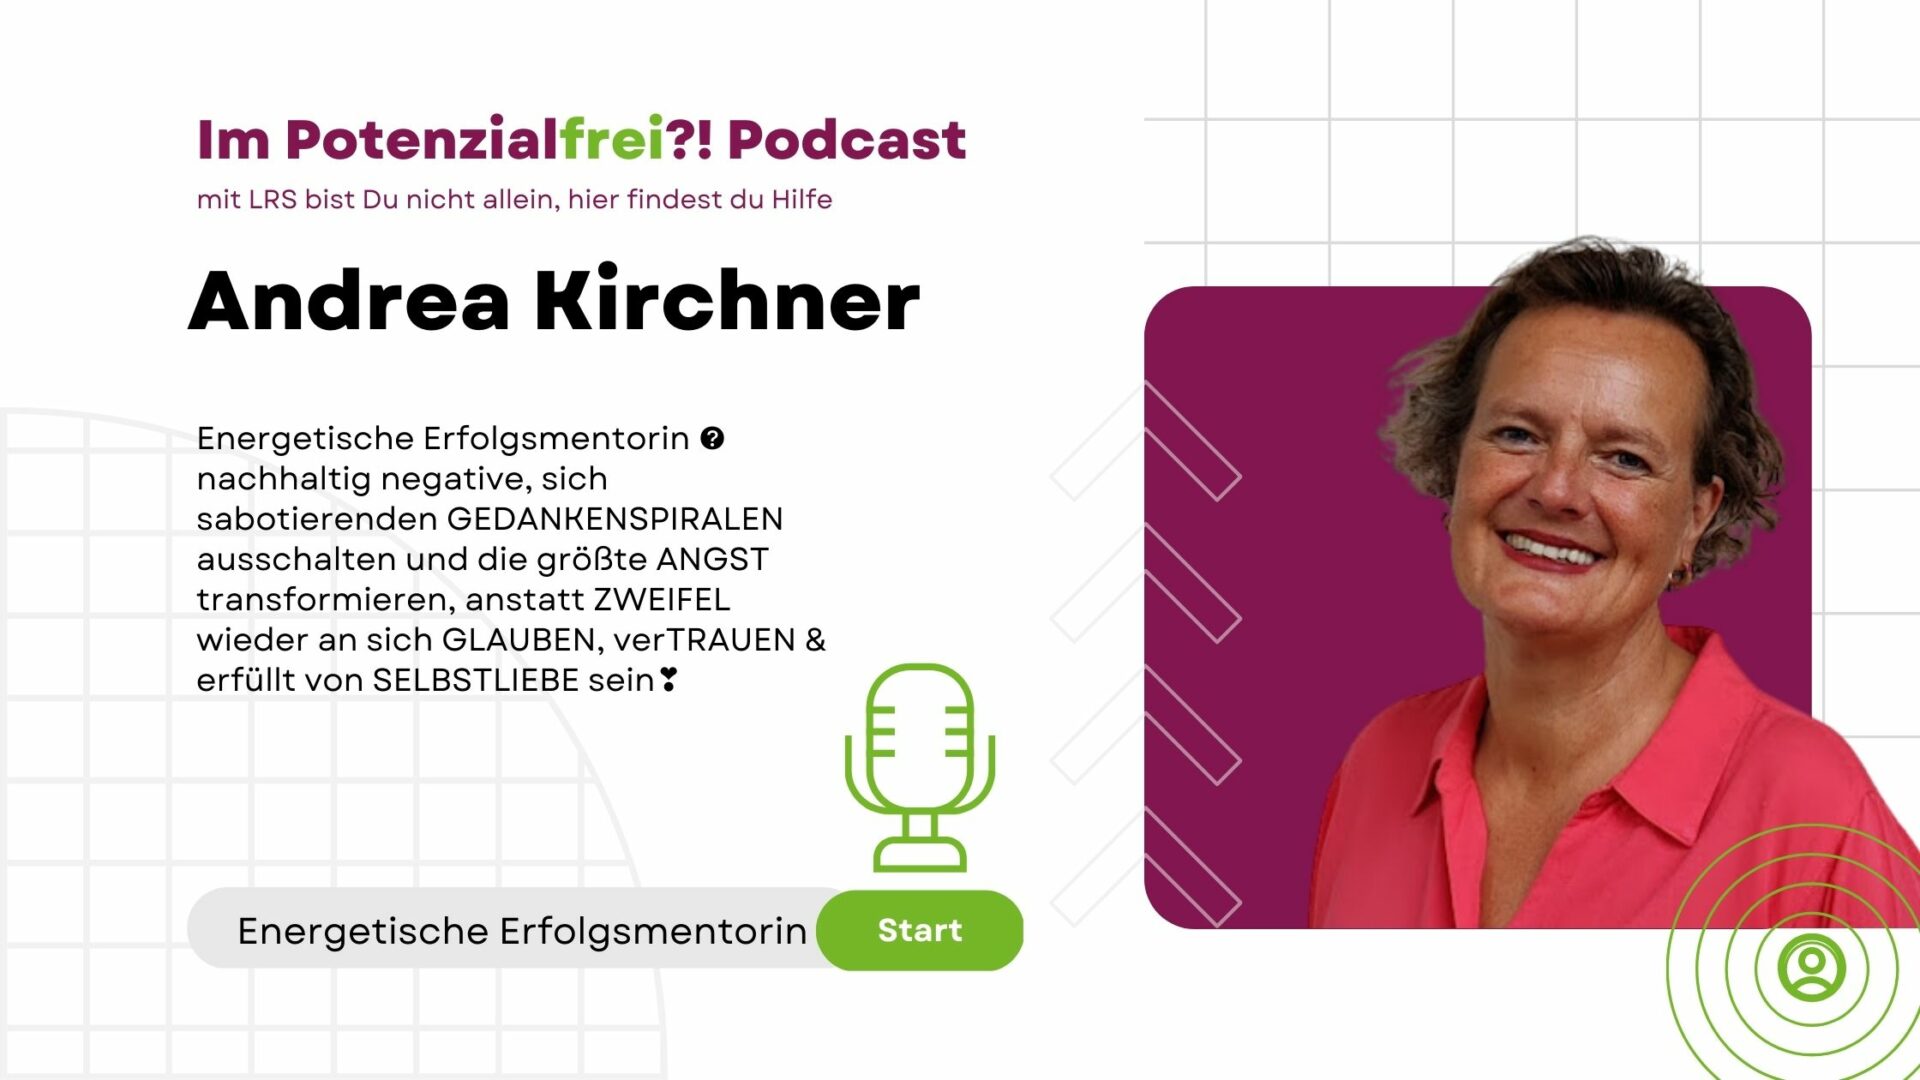 Andrea Kirchner Energetische Erfolgsmentorin